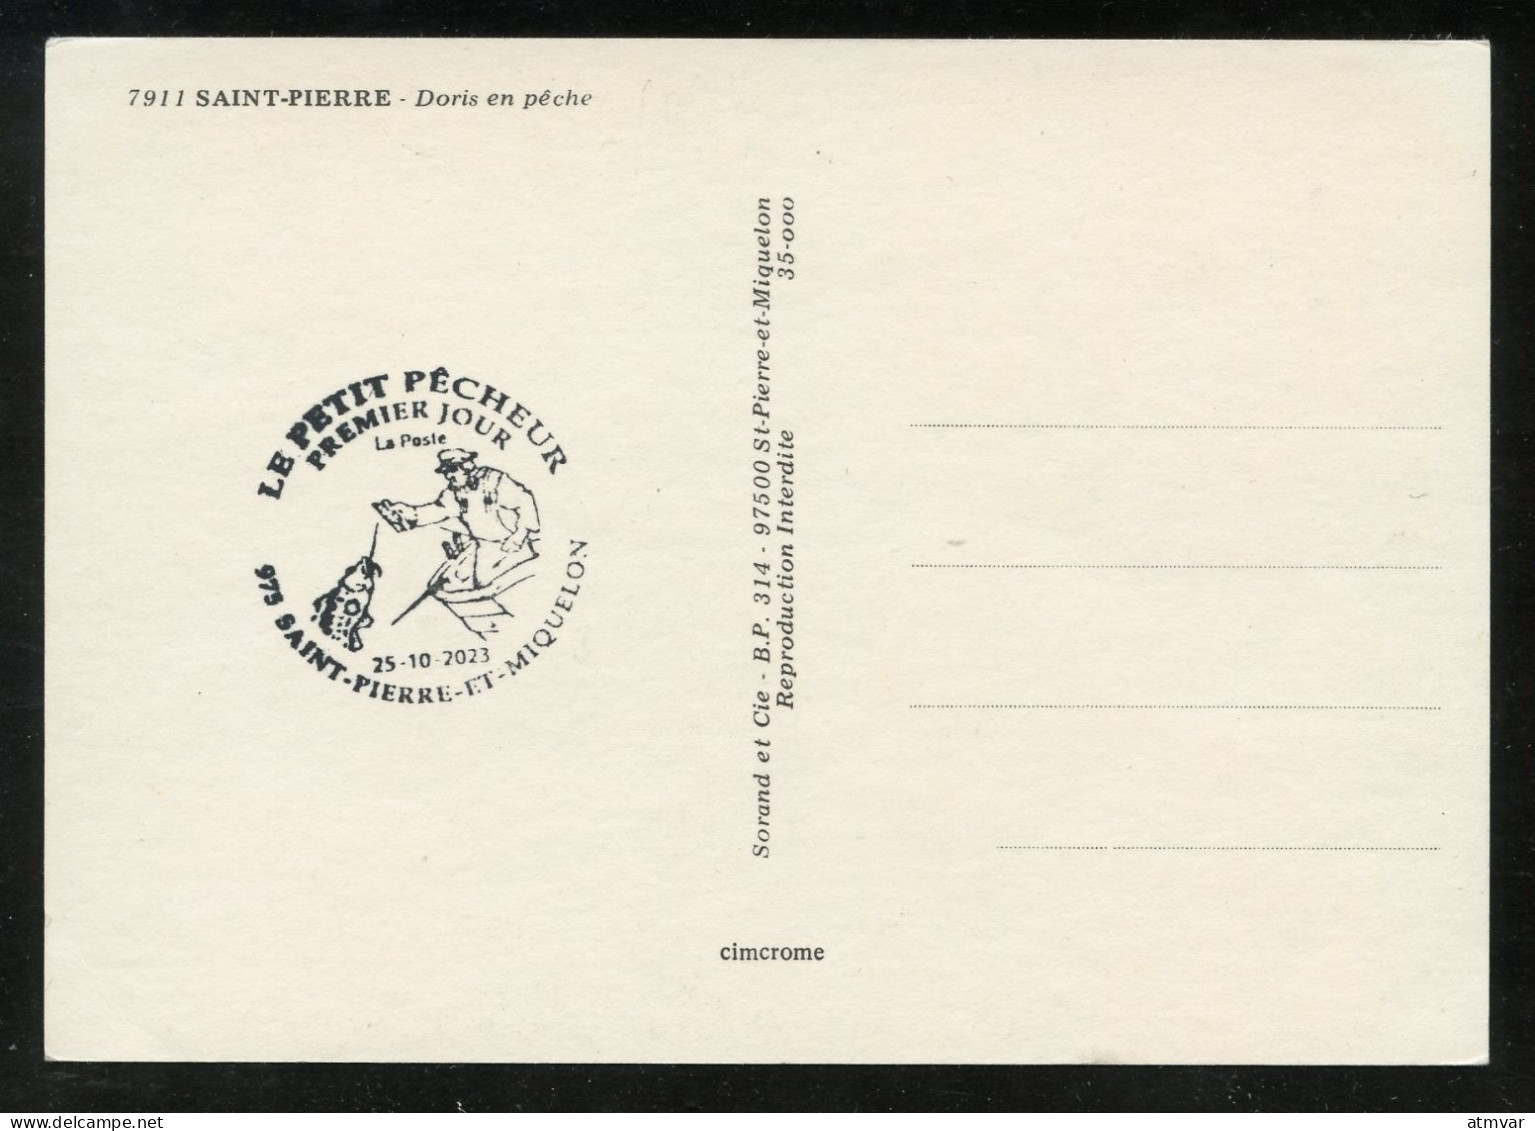 SAINT PIERRE ET MIQUELON (2023) Carte Maximum Card - Le Petit Pêcheur, Fishing Boat, Fisherman, Pêche - Maximumkaarten